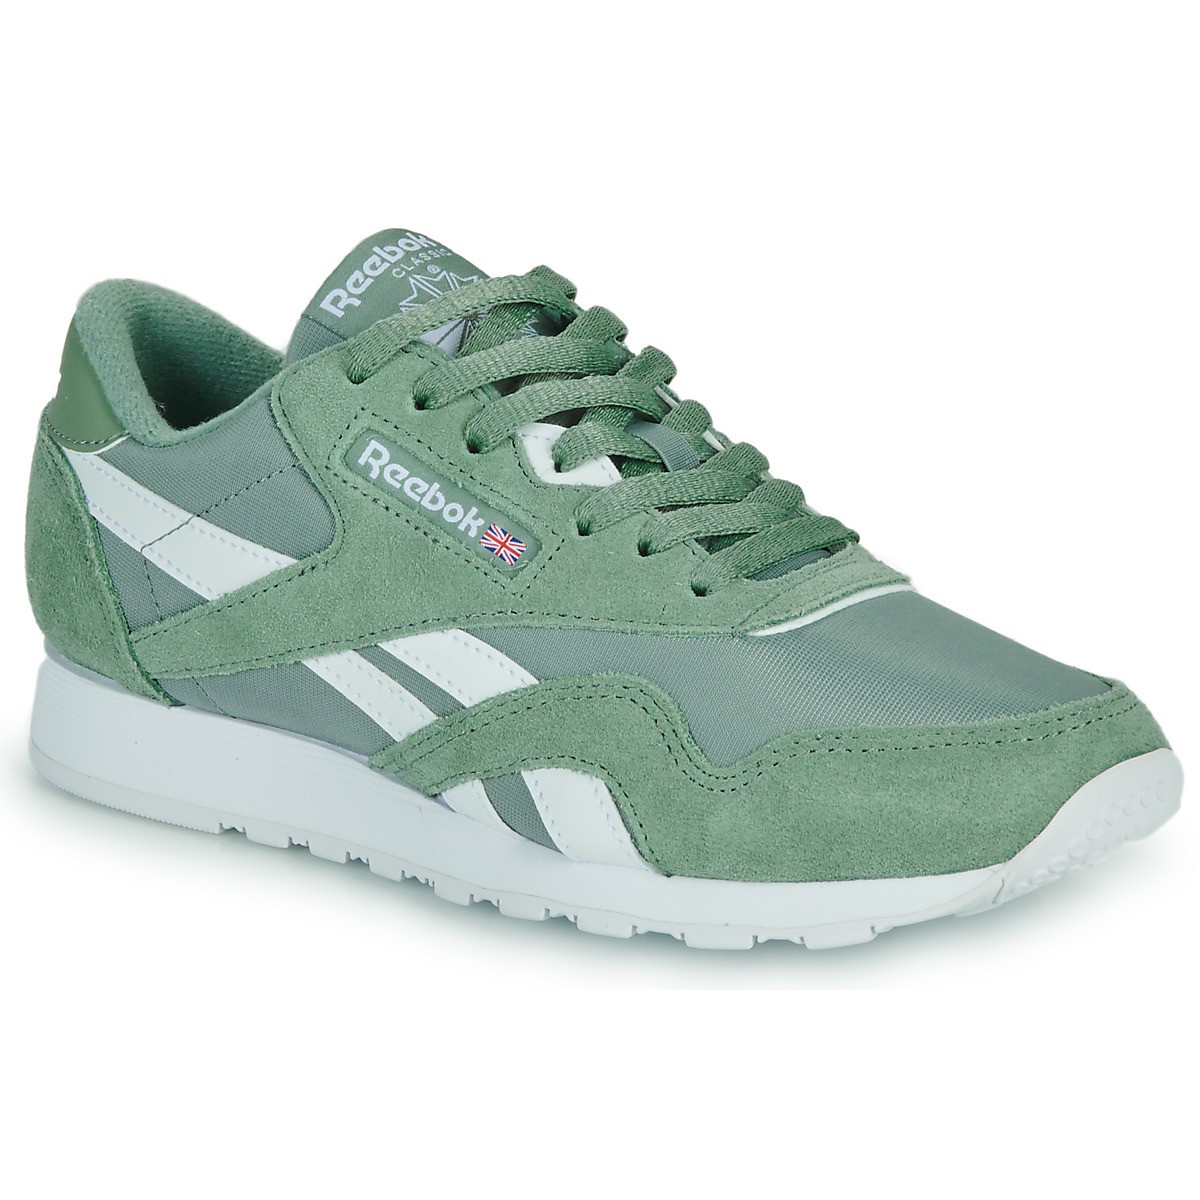 Sneakerek és cipők Reebok Classic Leather "Green" Zöld | 100033379, 0